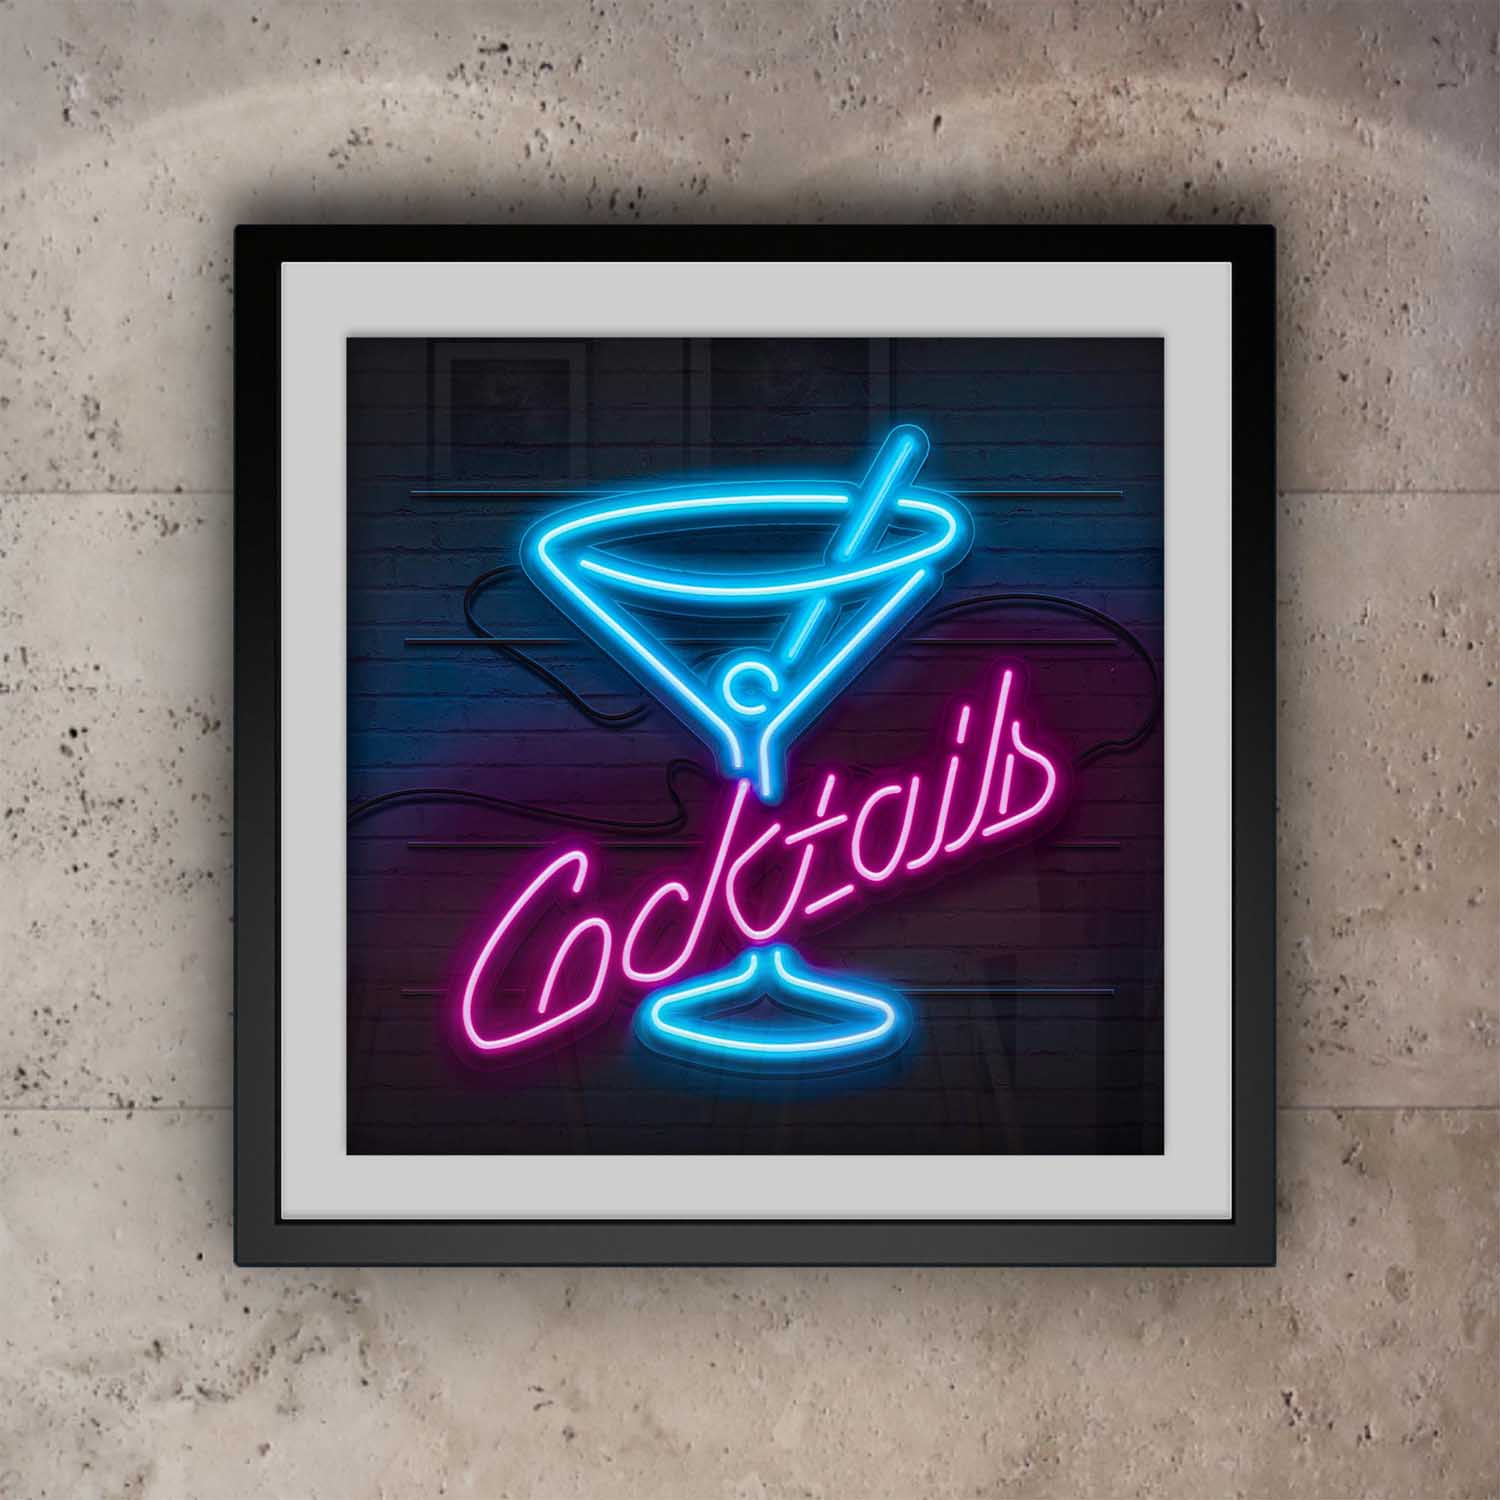 Cocktails Bar Sign Poster